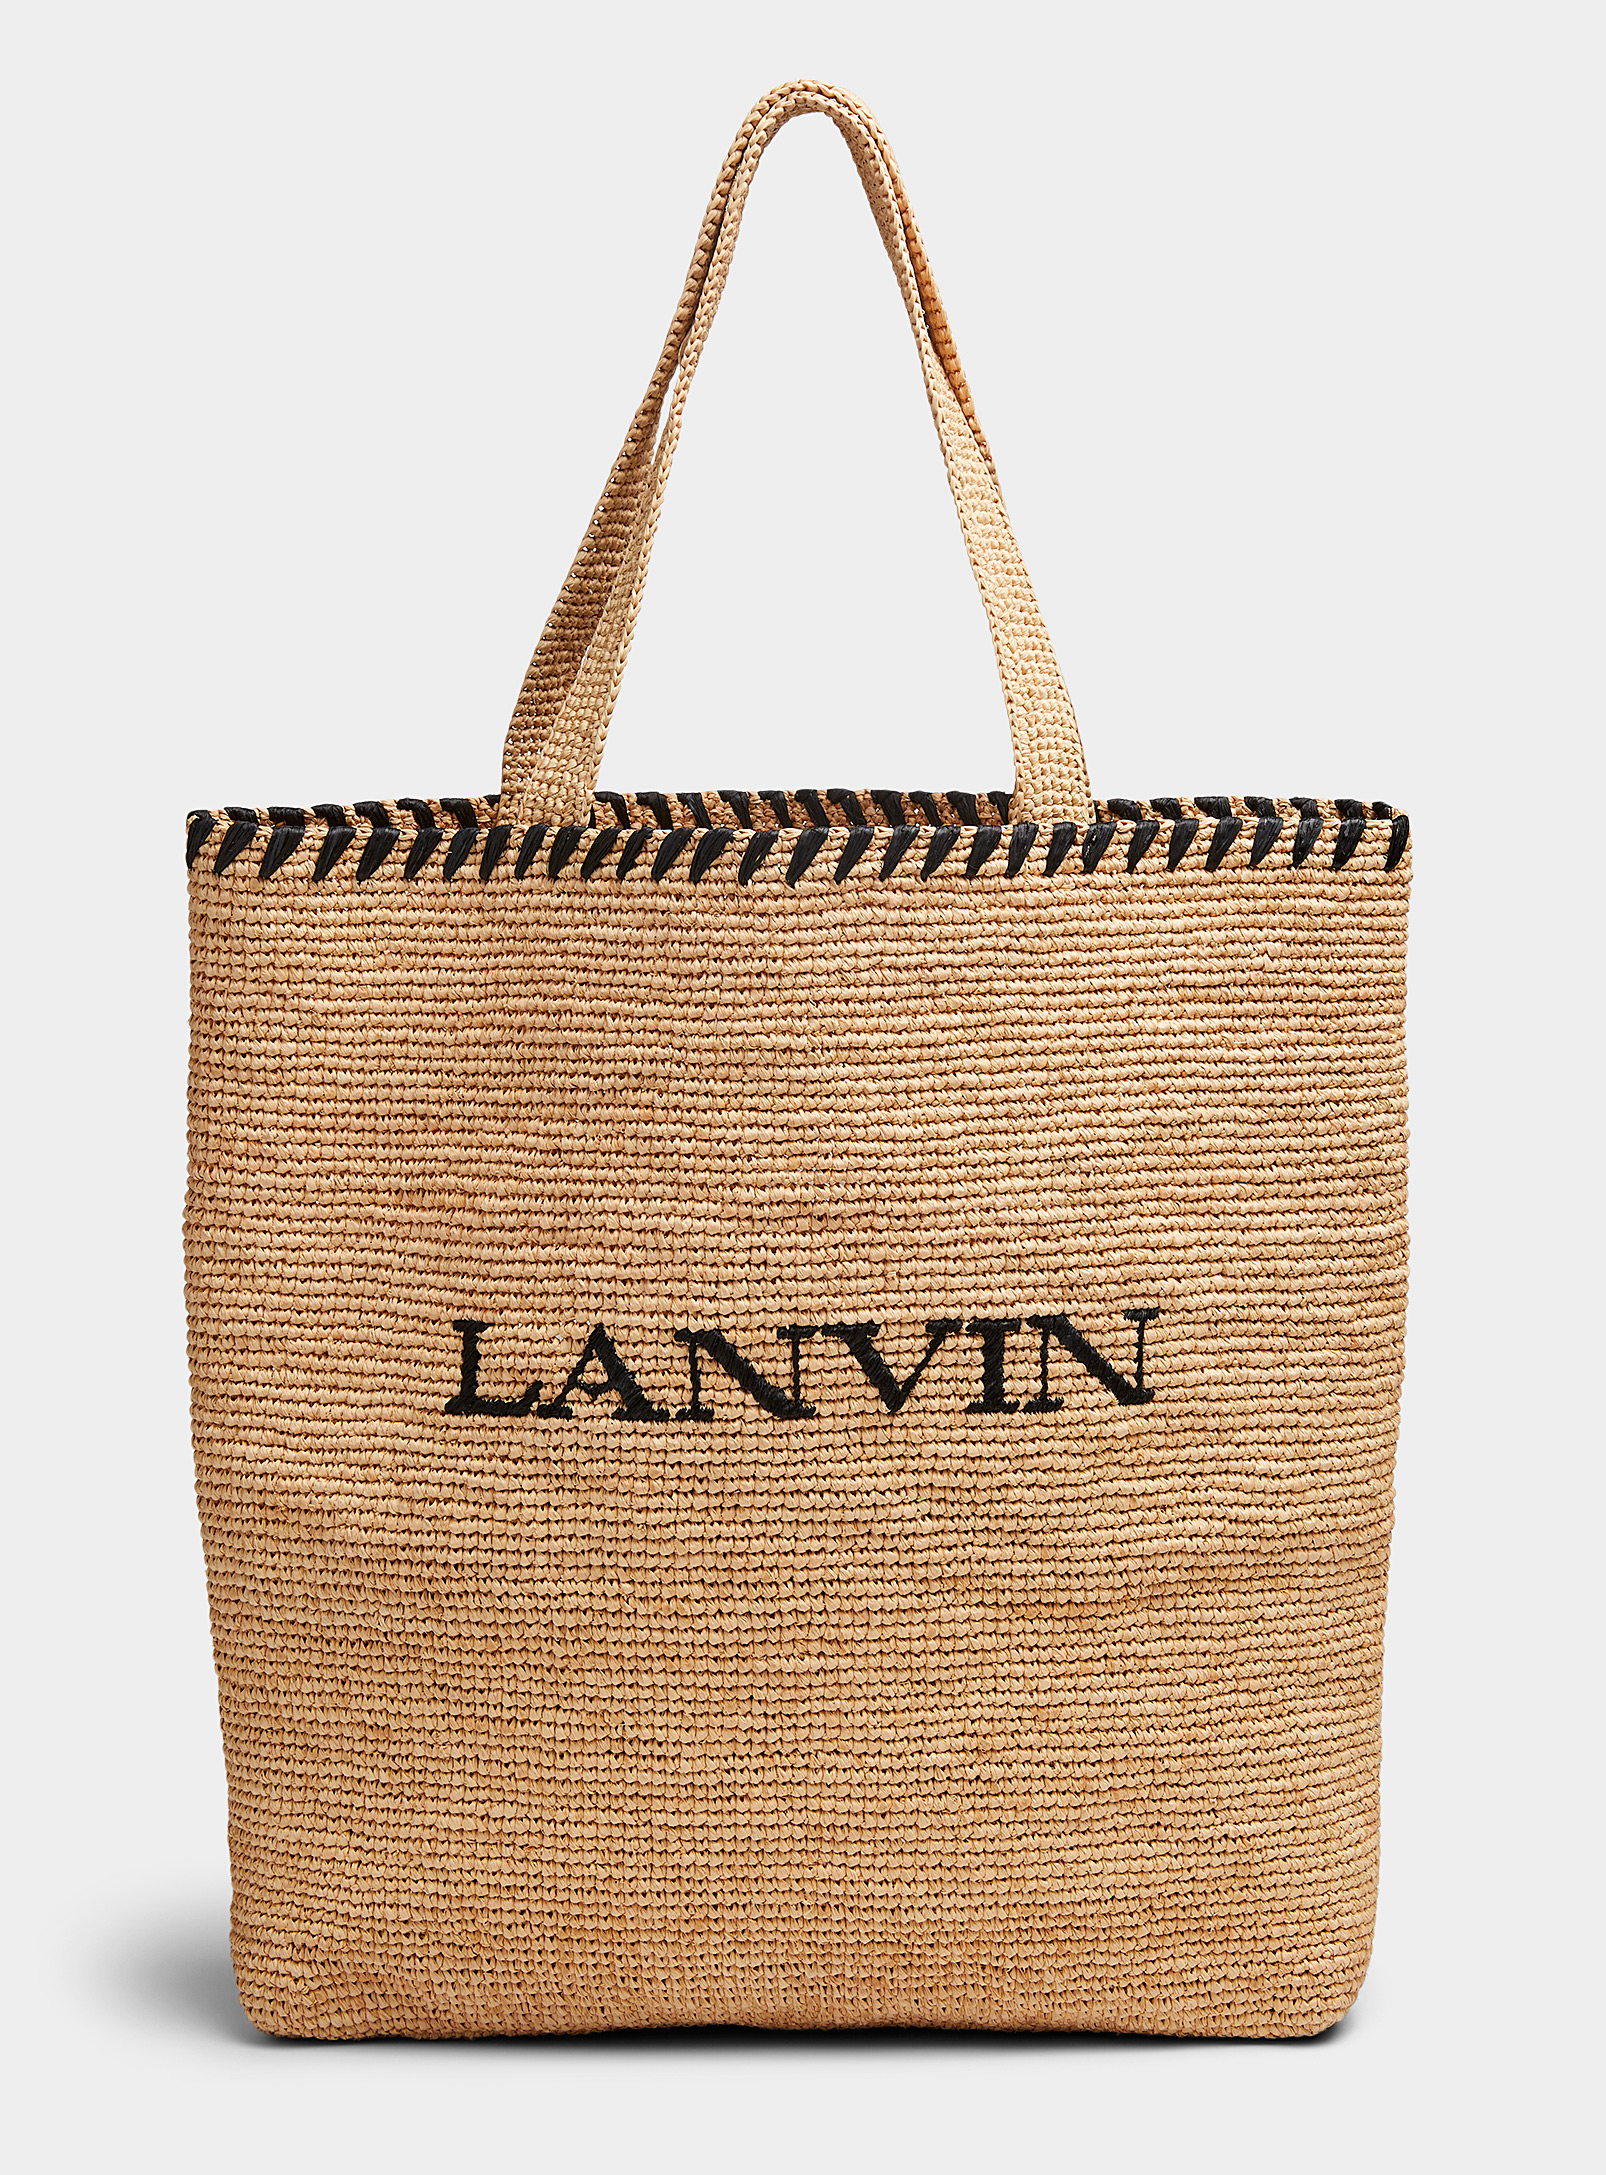 Lanvin - Women's Raffia tote bag